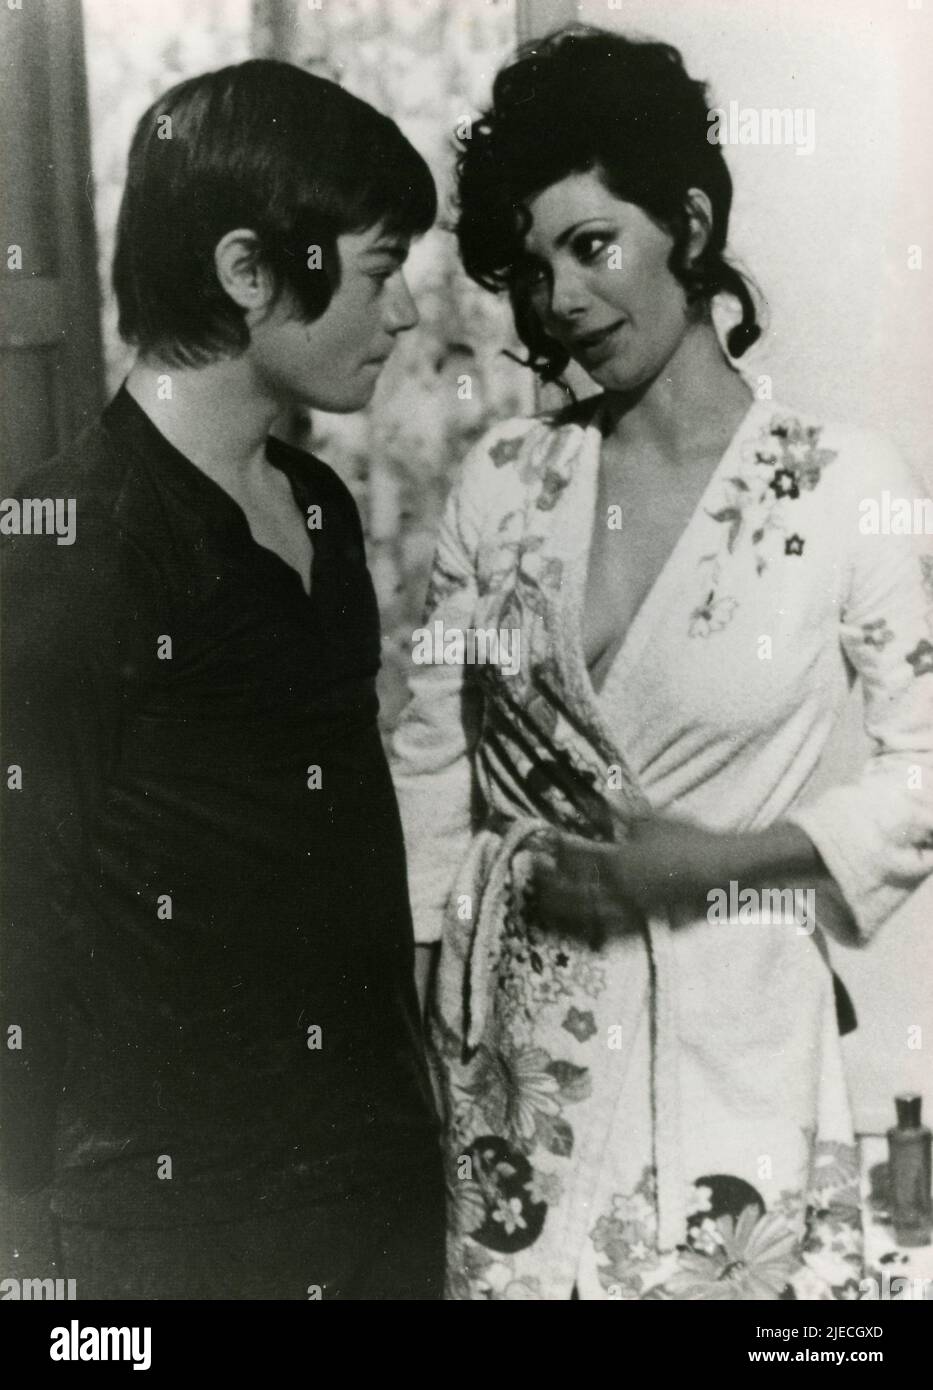 Attore e terrorista italiano Valerio Fioravanti e attrice Edwige Fenech nel film amante Boy (grazie…nonna), Italia 1975 Foto Stock